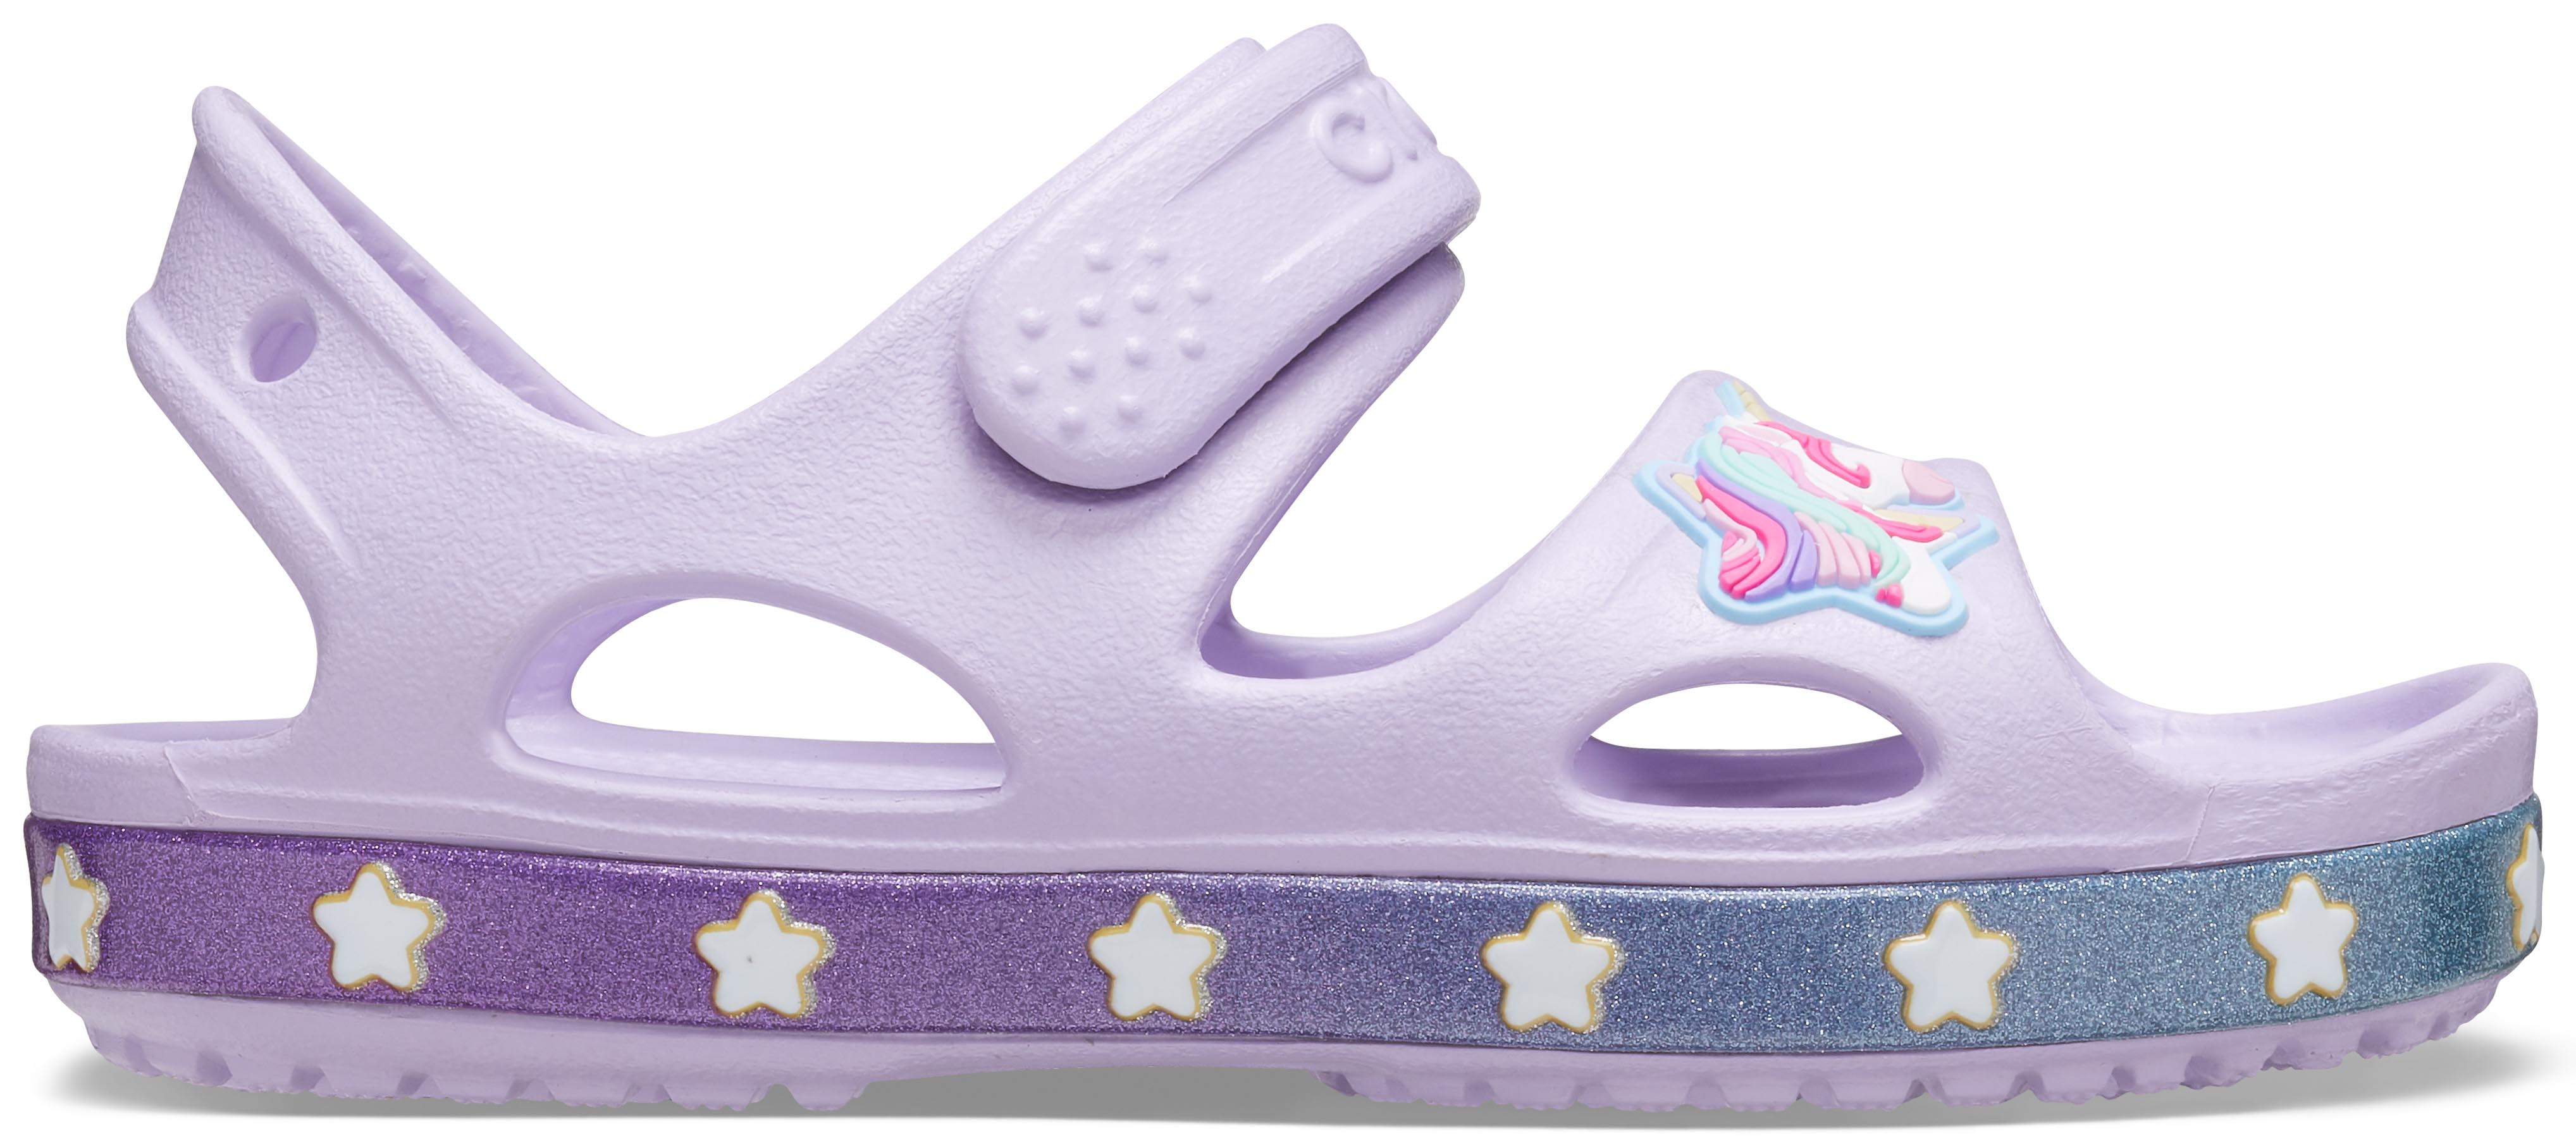 crocs unicorn sandals